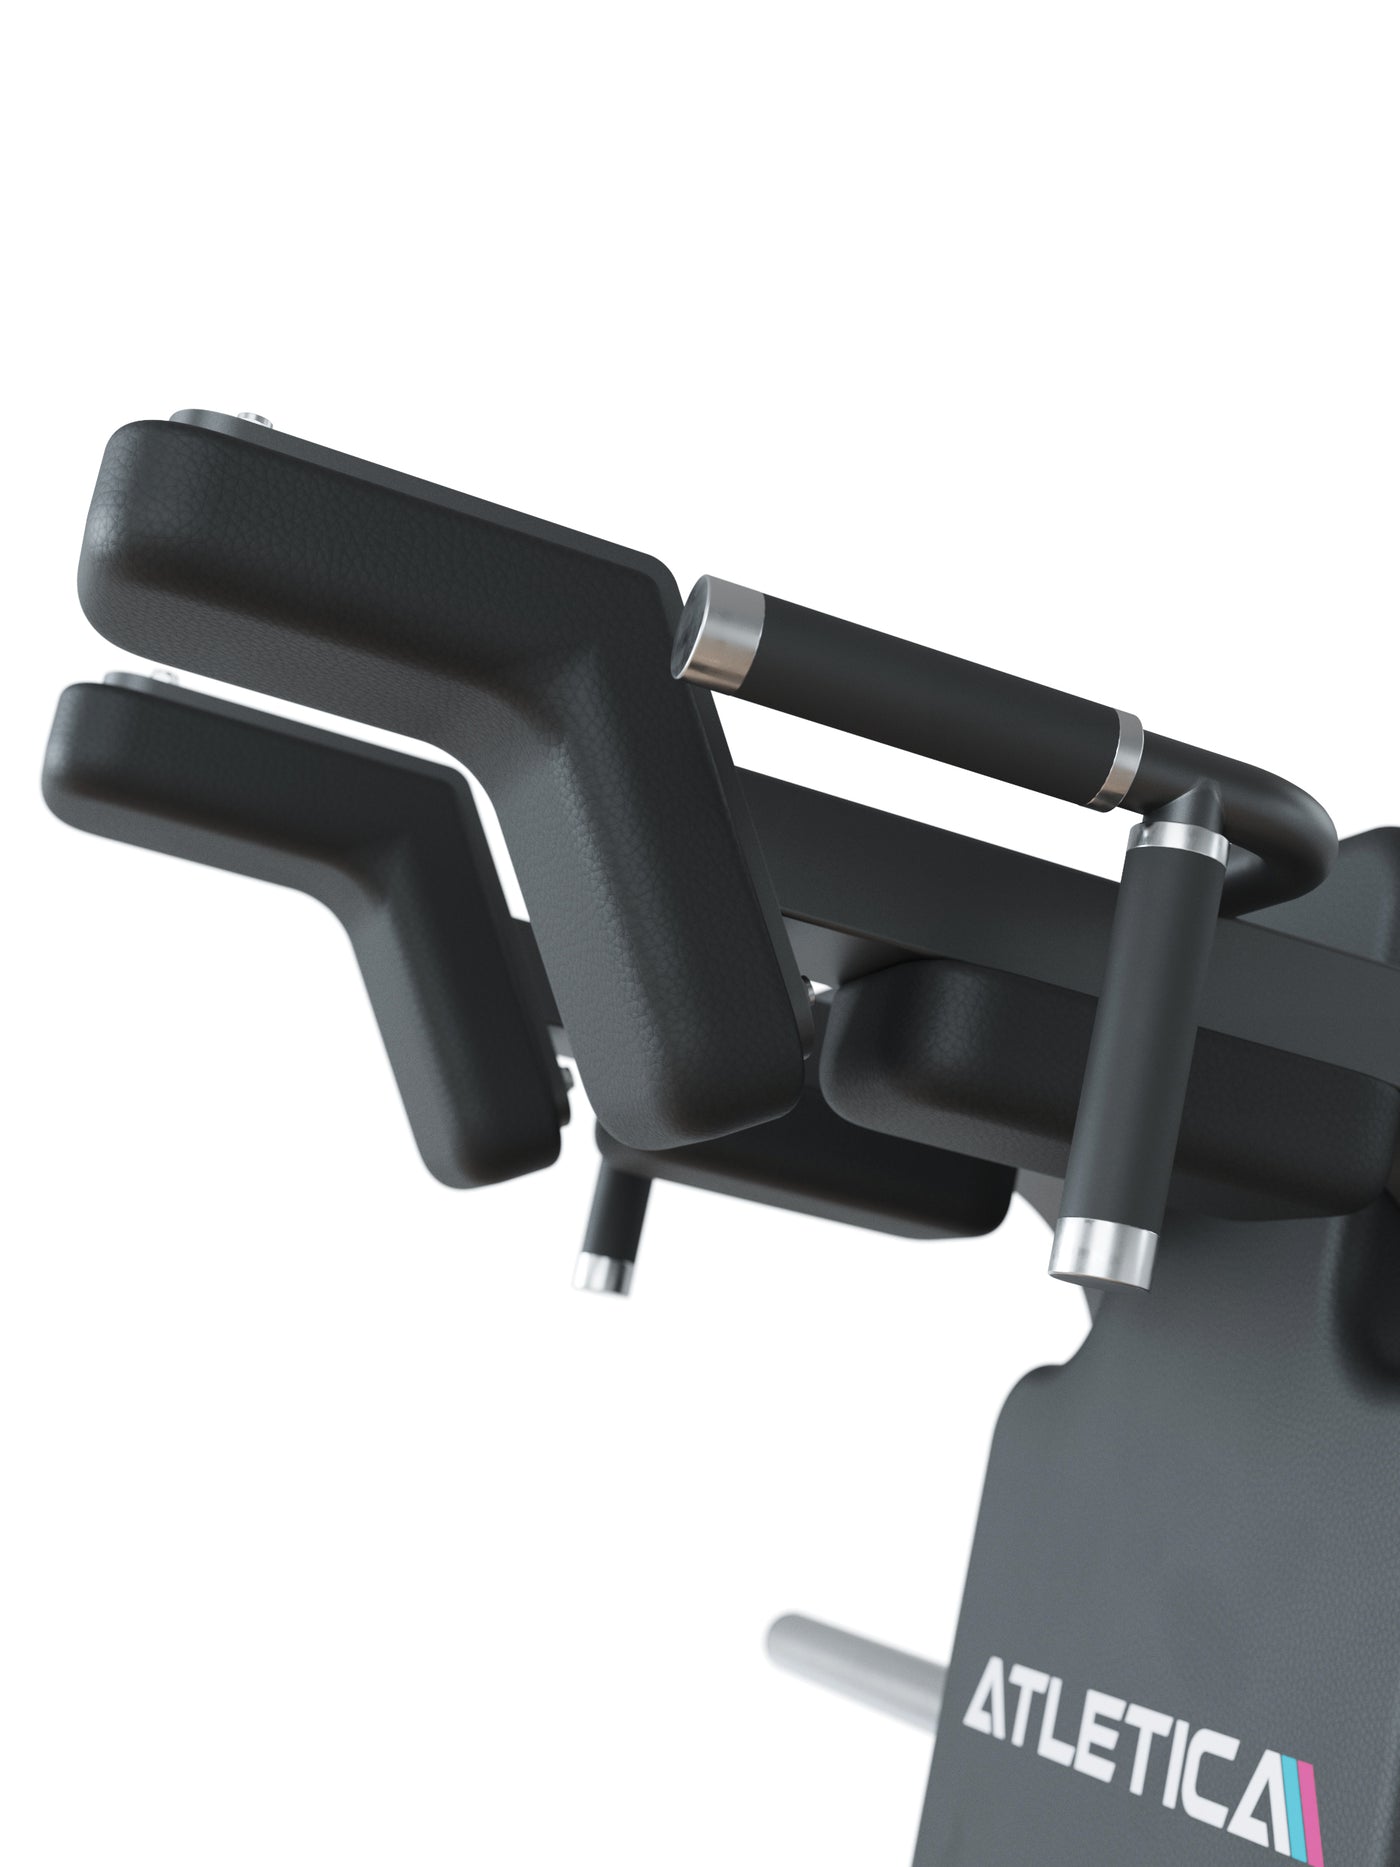 V-Squat Kniebeugemaschine Kniebeugemaschine: Drei verschiedene Squat-Varianten | Natürliche Bewegungsmuster | Hohe Effektivität